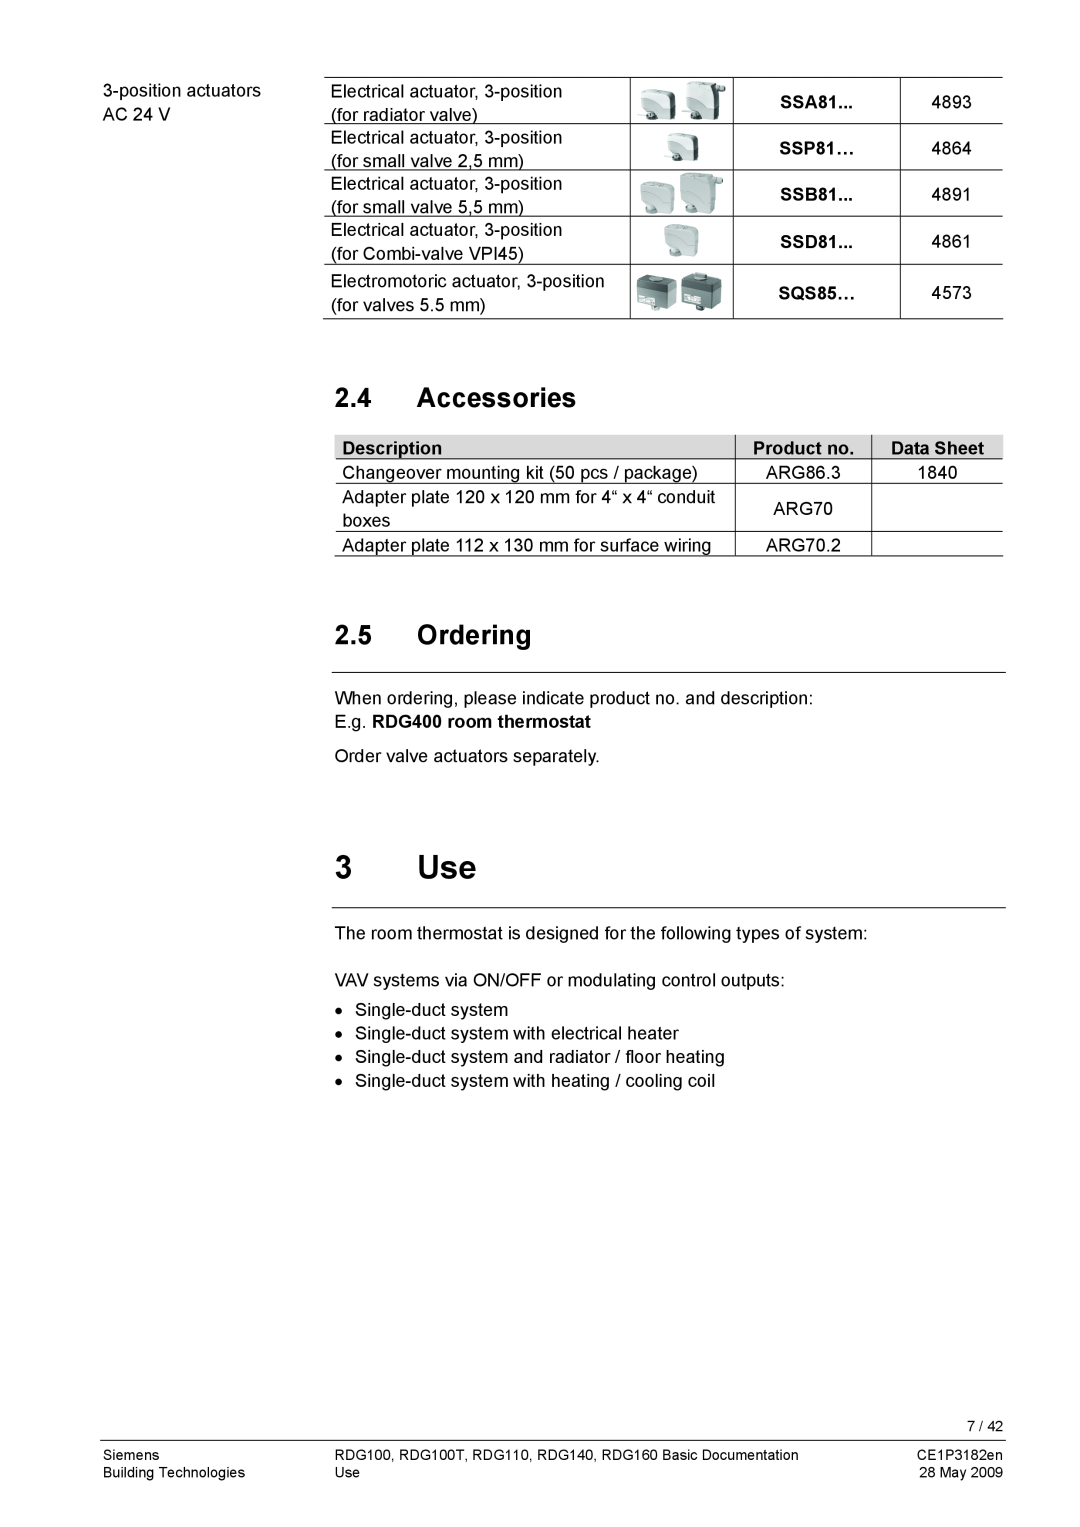 Siemens RDG400 manual 3 Use, Accessories, 2.5Ordering 